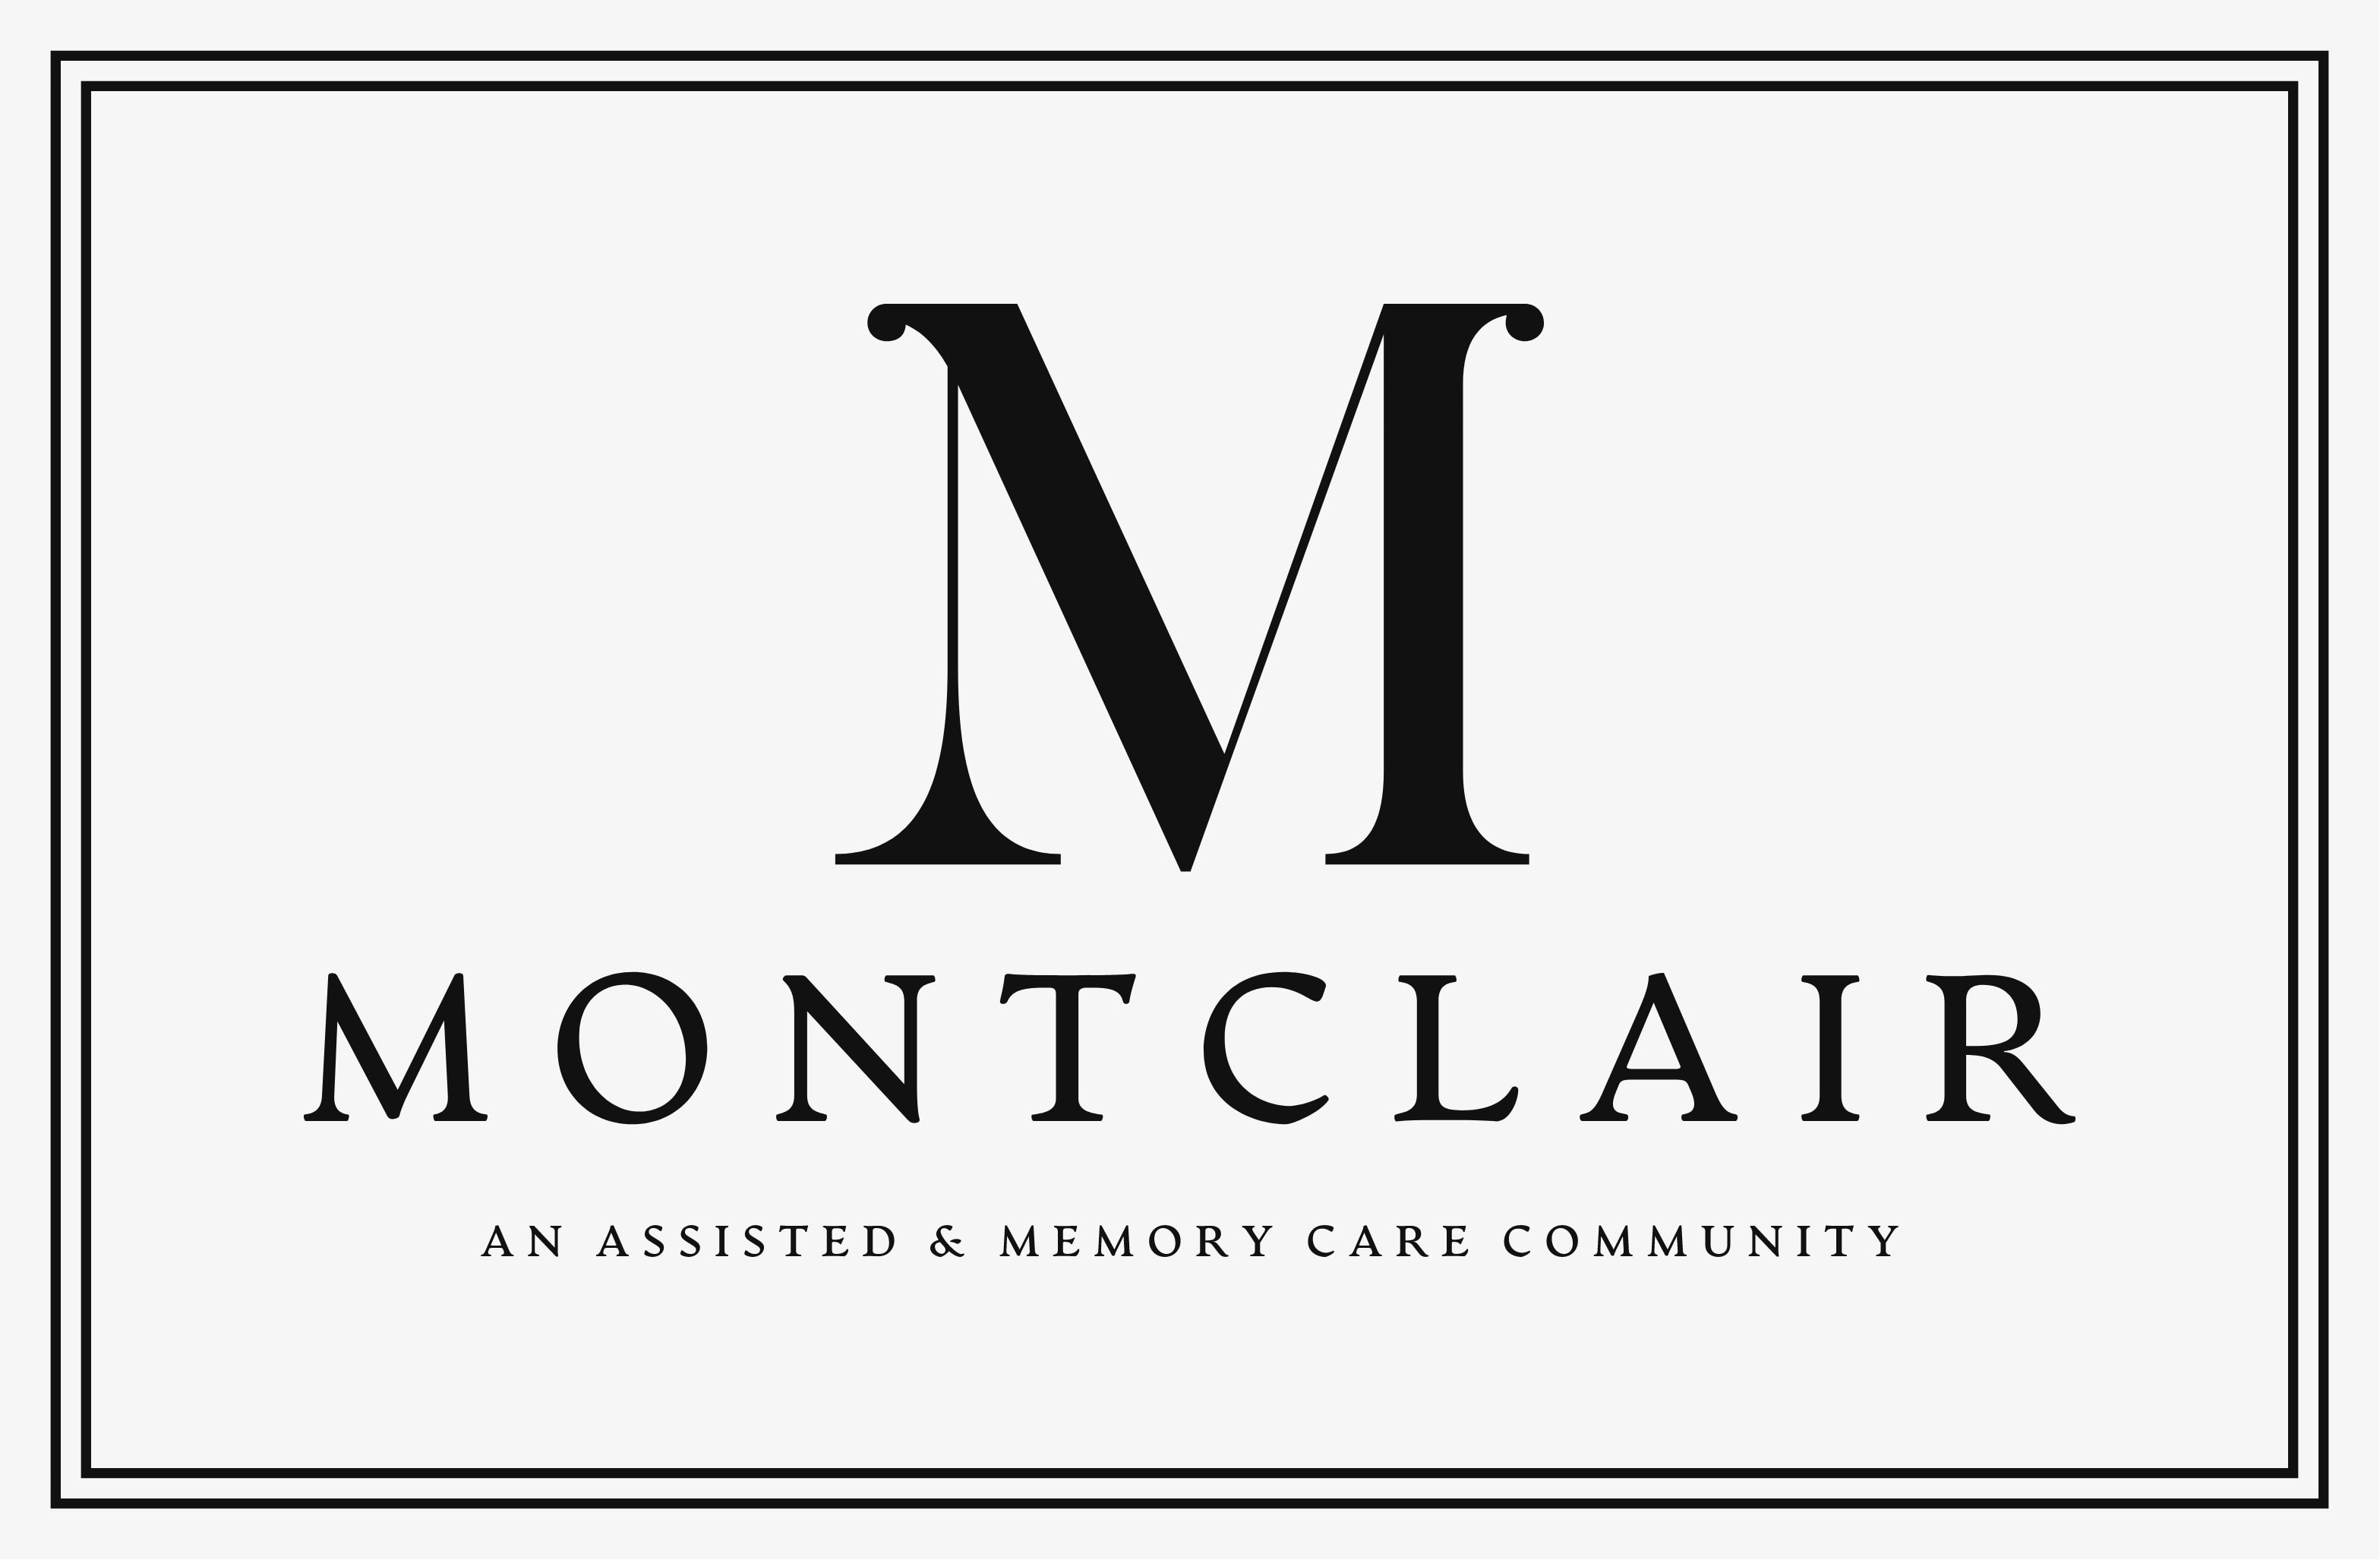 Montclair Senior Living and Memory Care